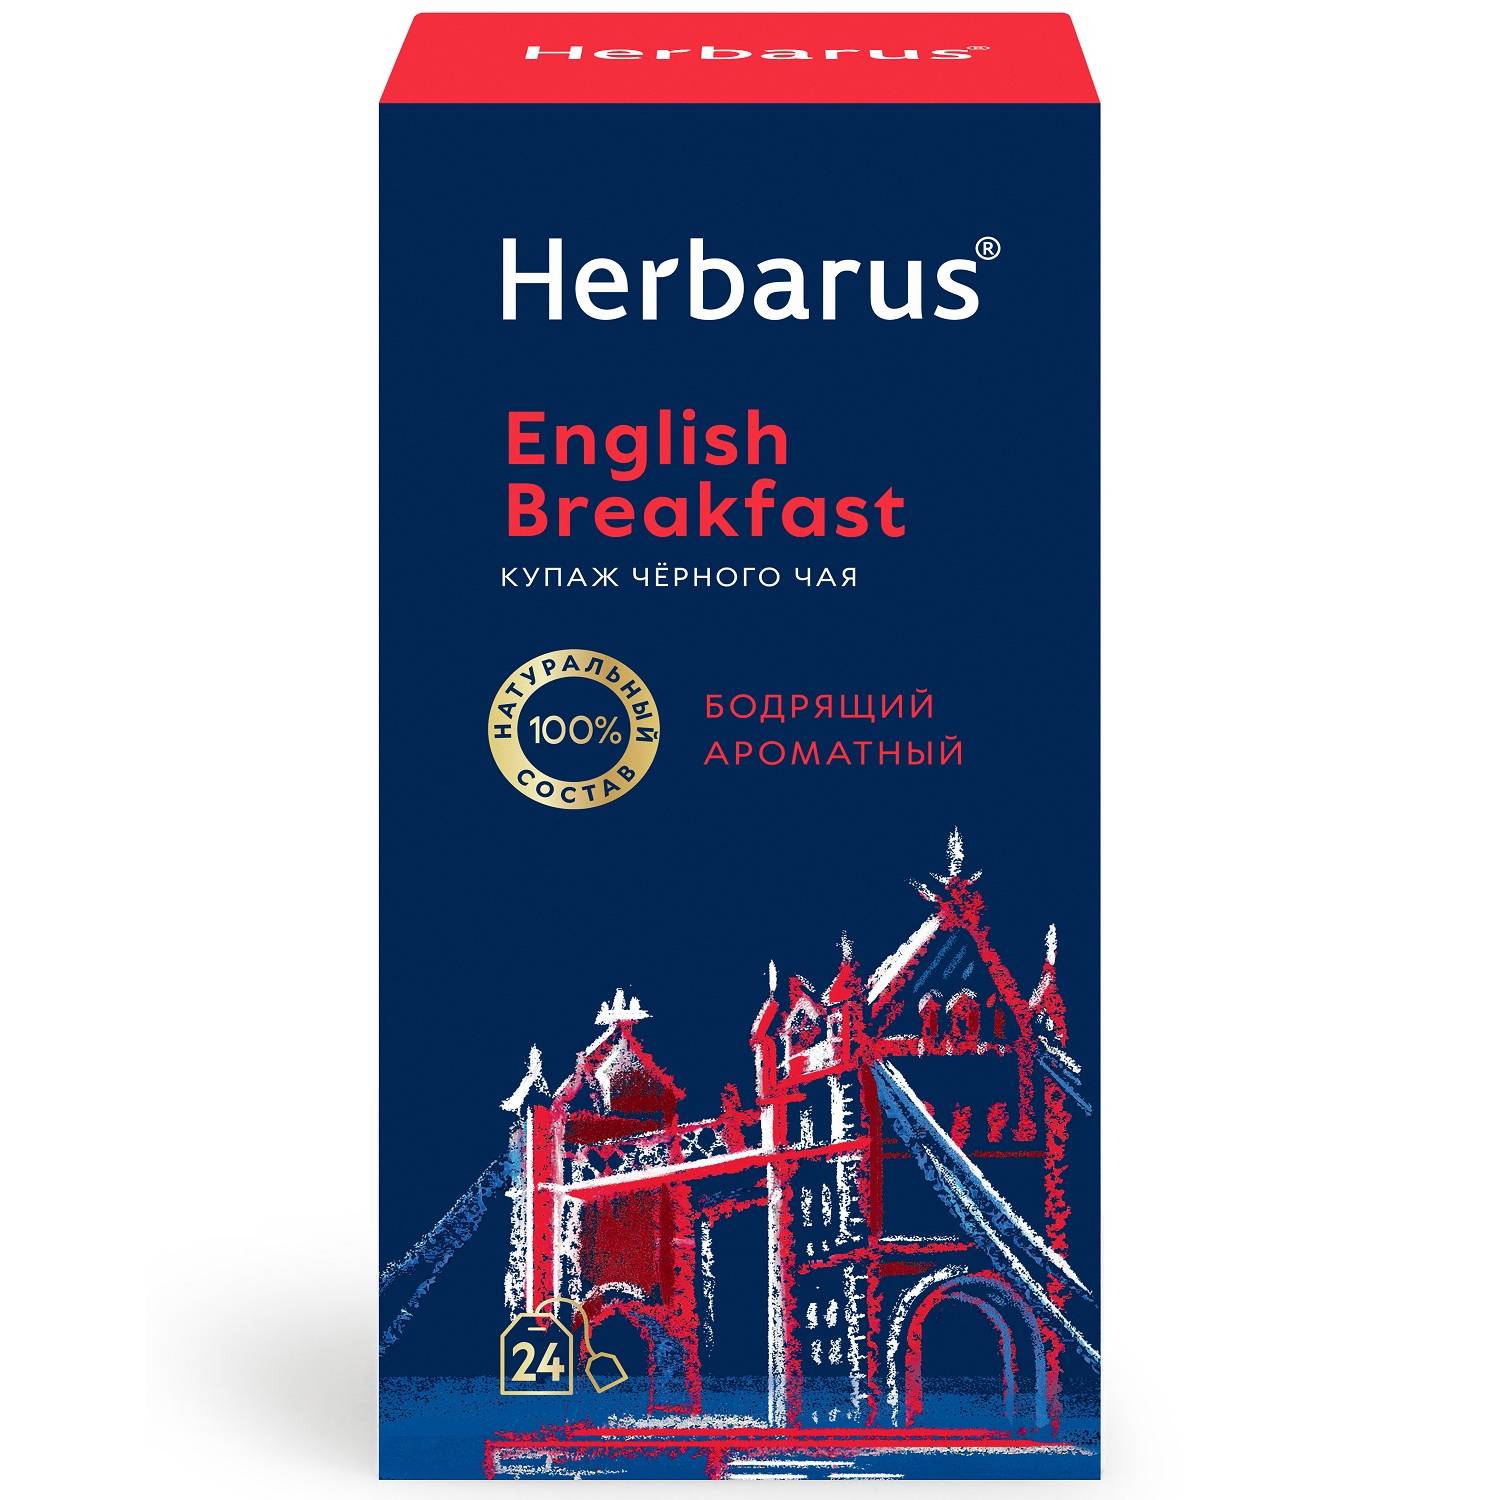 Herbarus Купаж черного чая English Breakfast, 24 пакетика х 2 г (Herbarus, Классический чай) herbarus чай черный с добавками сладкий восточный 24 х 2 г herbarus чай с добавками